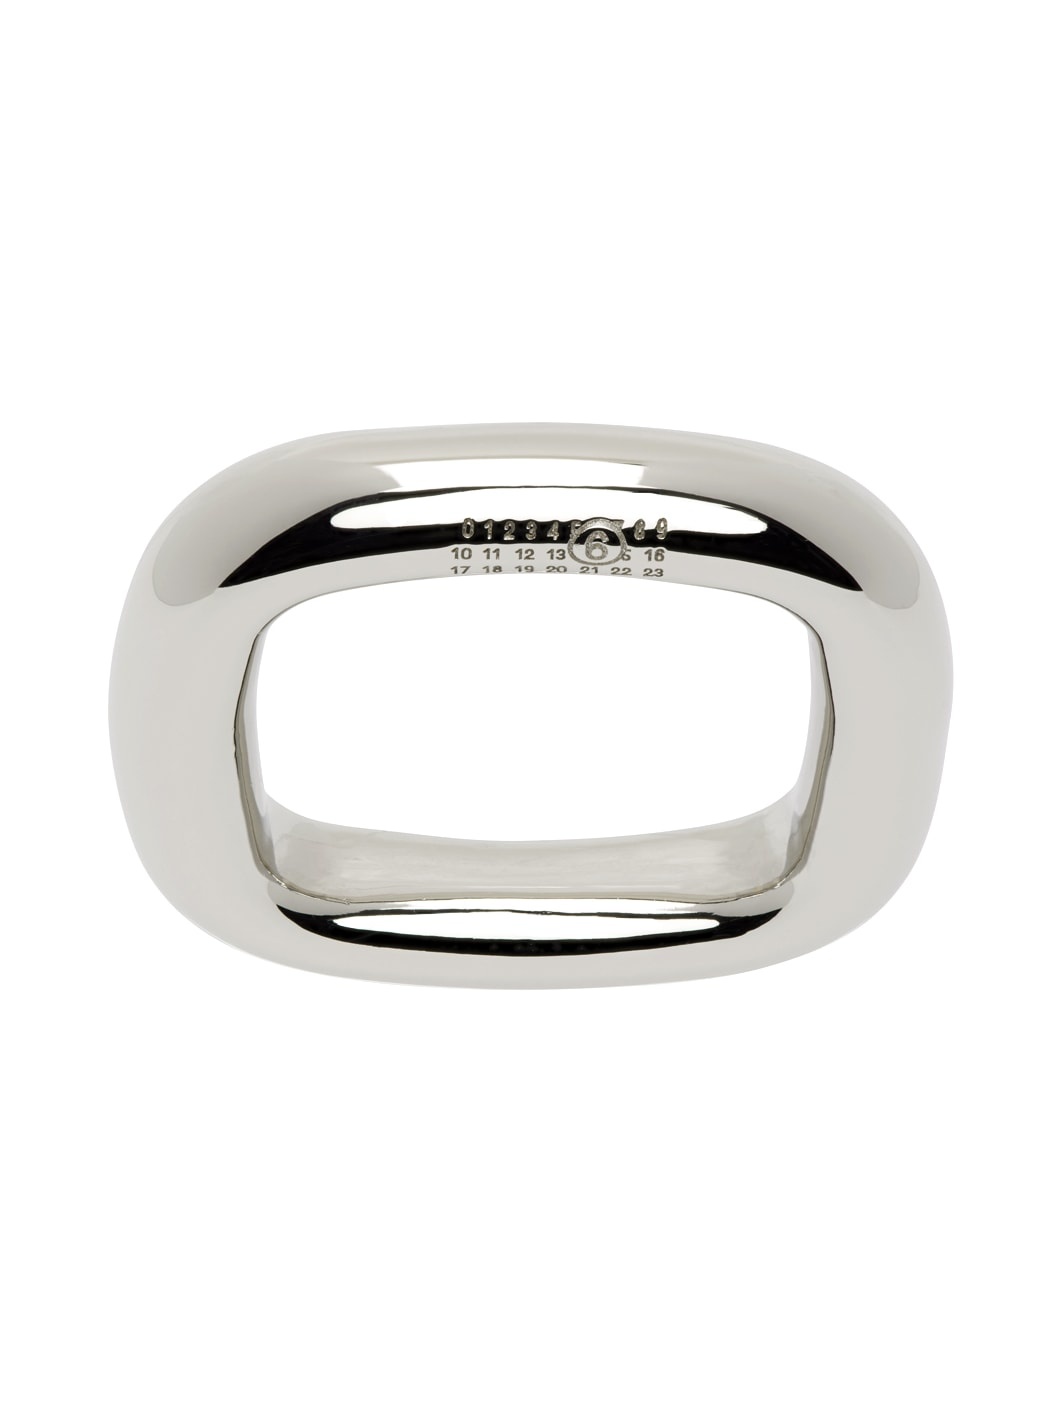 Silver Tubing Ring - 1